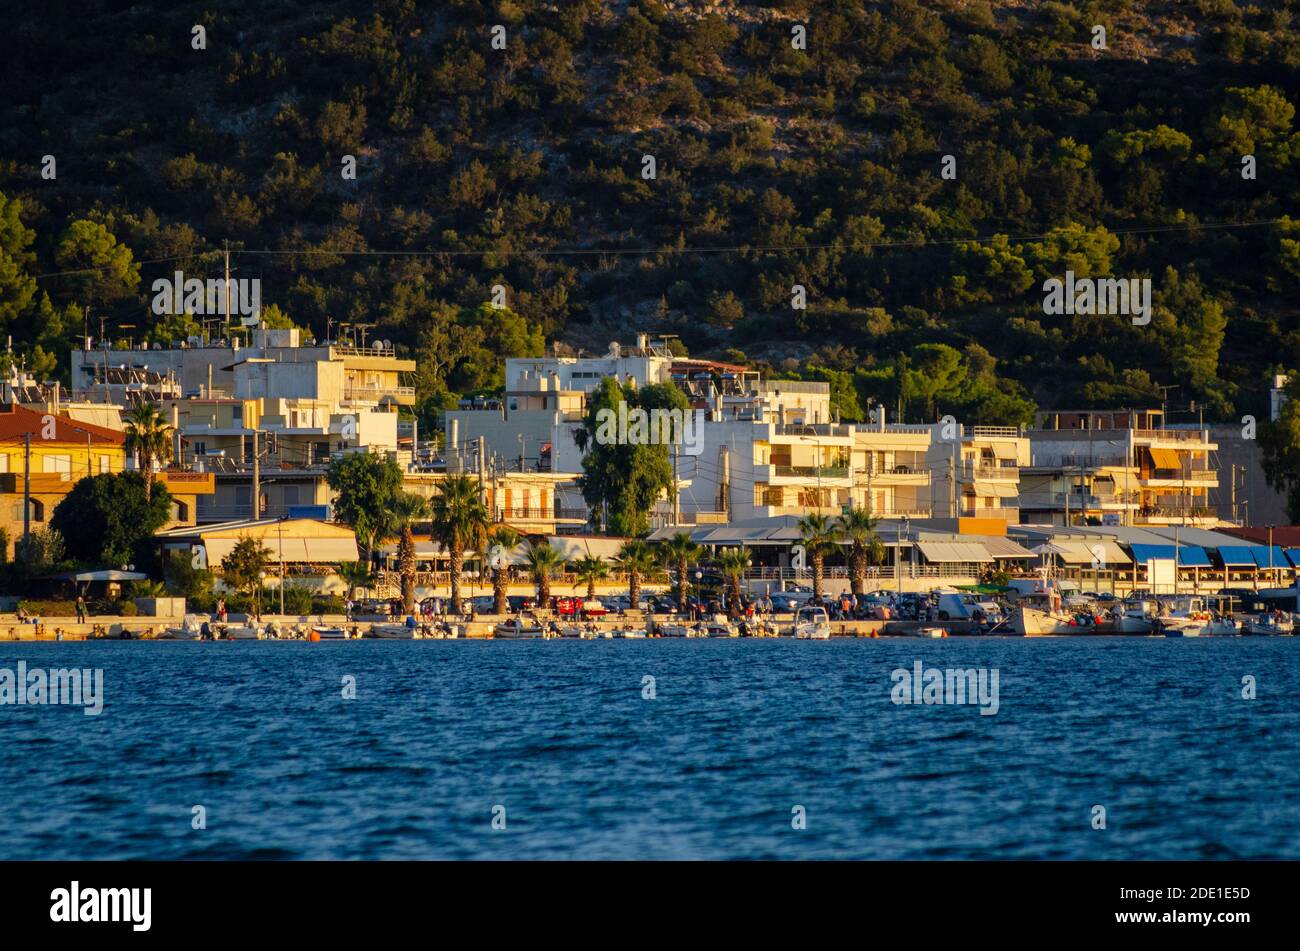 Allgemeine Ansicht von Palaia Fochaia an der Athenäischen Riviera in Attica Griechenland - Foto: Geopix Stockfoto